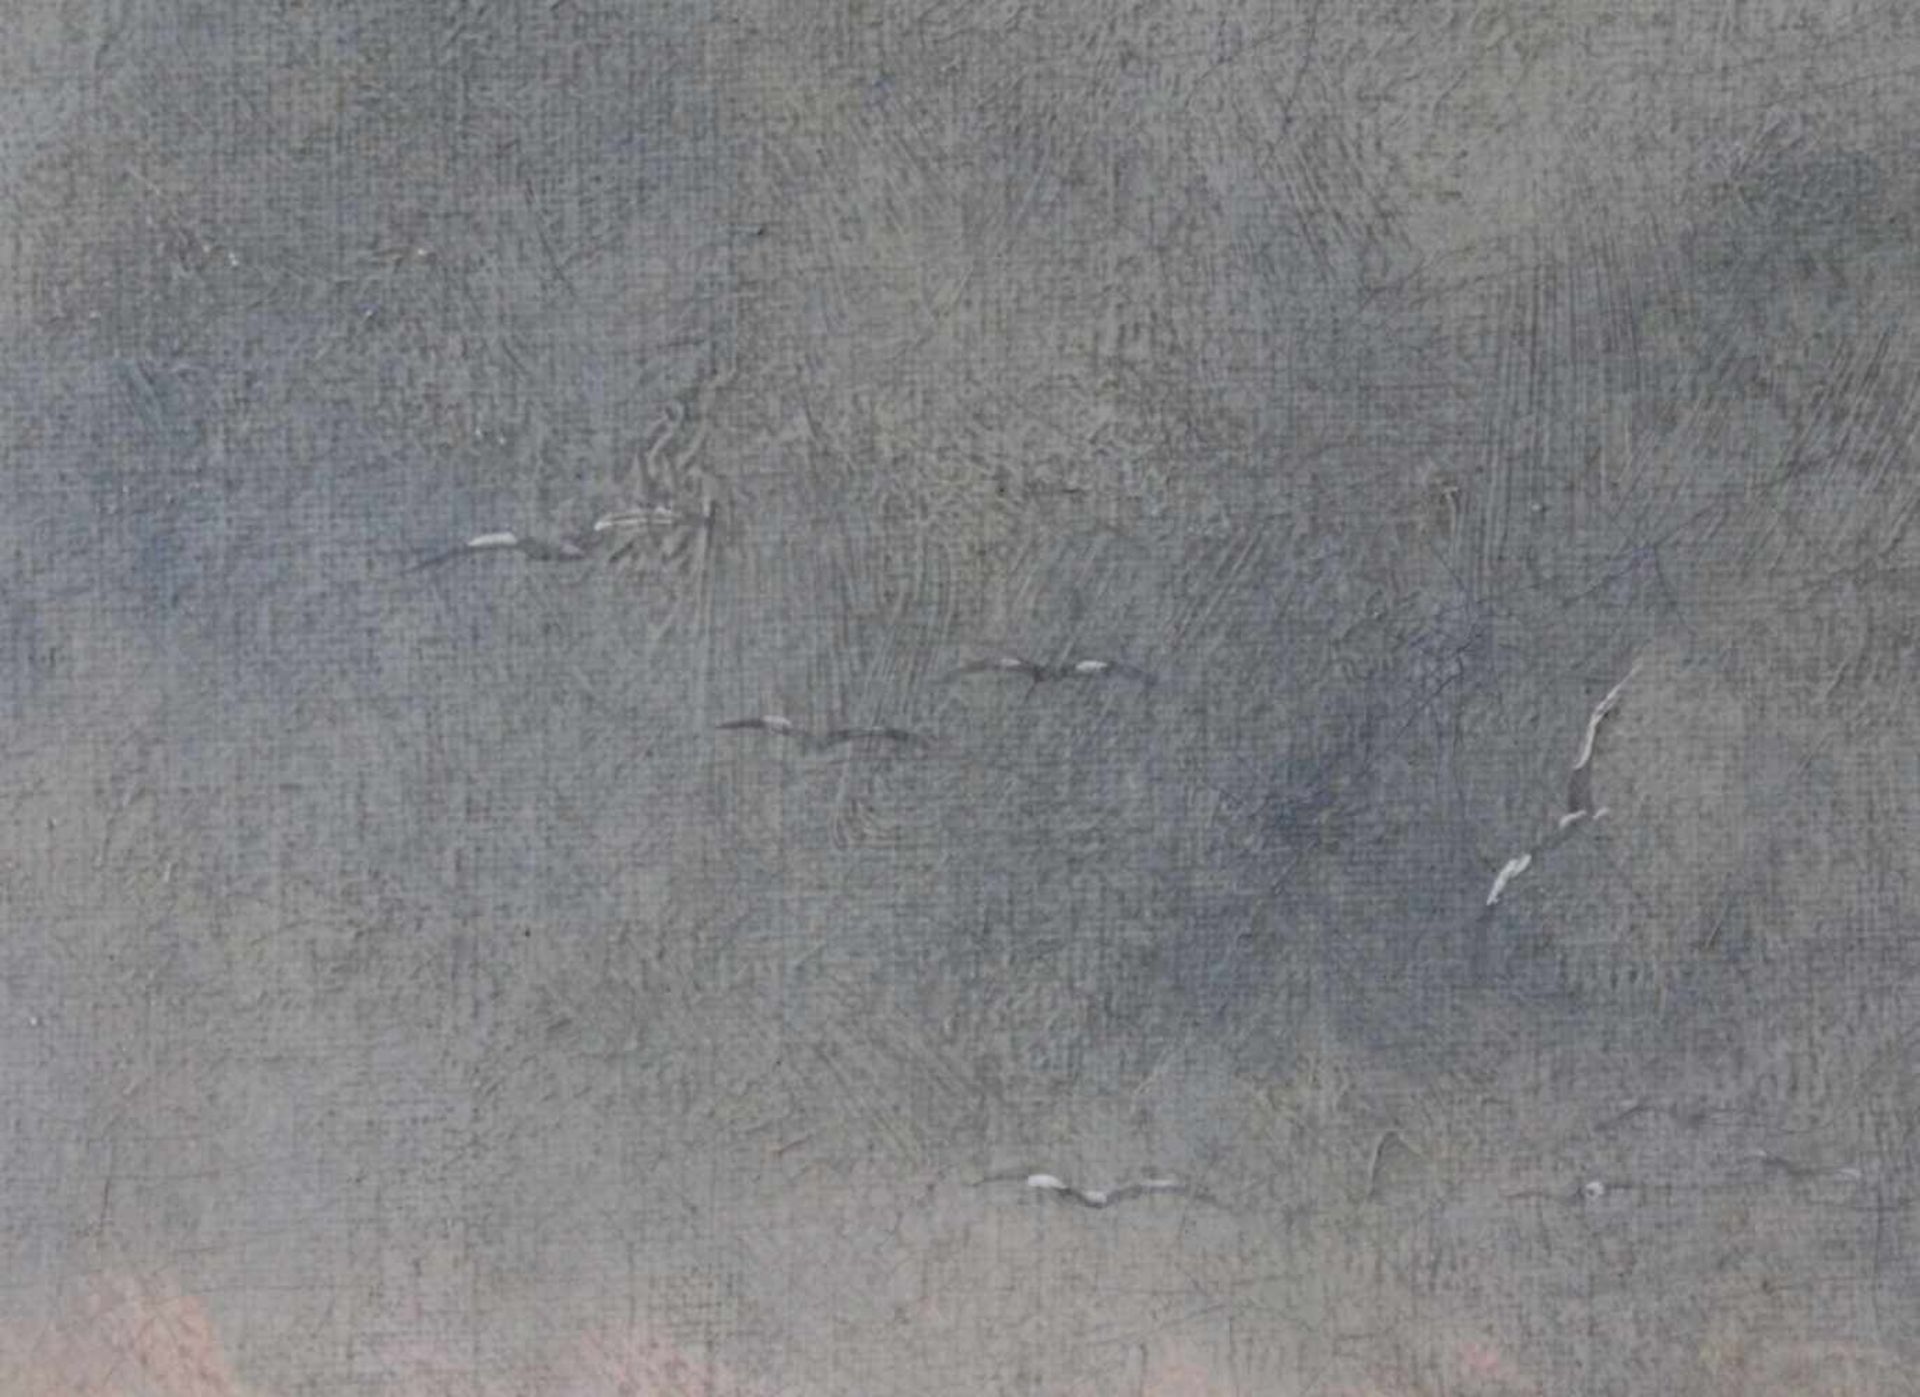 ACHENBACH (XX). Krabbenfischerinnen auf dem Heimweg.65 cm x 92 cm. Gemälde. Öl auf Leinwand, - Bild 10 aus 10